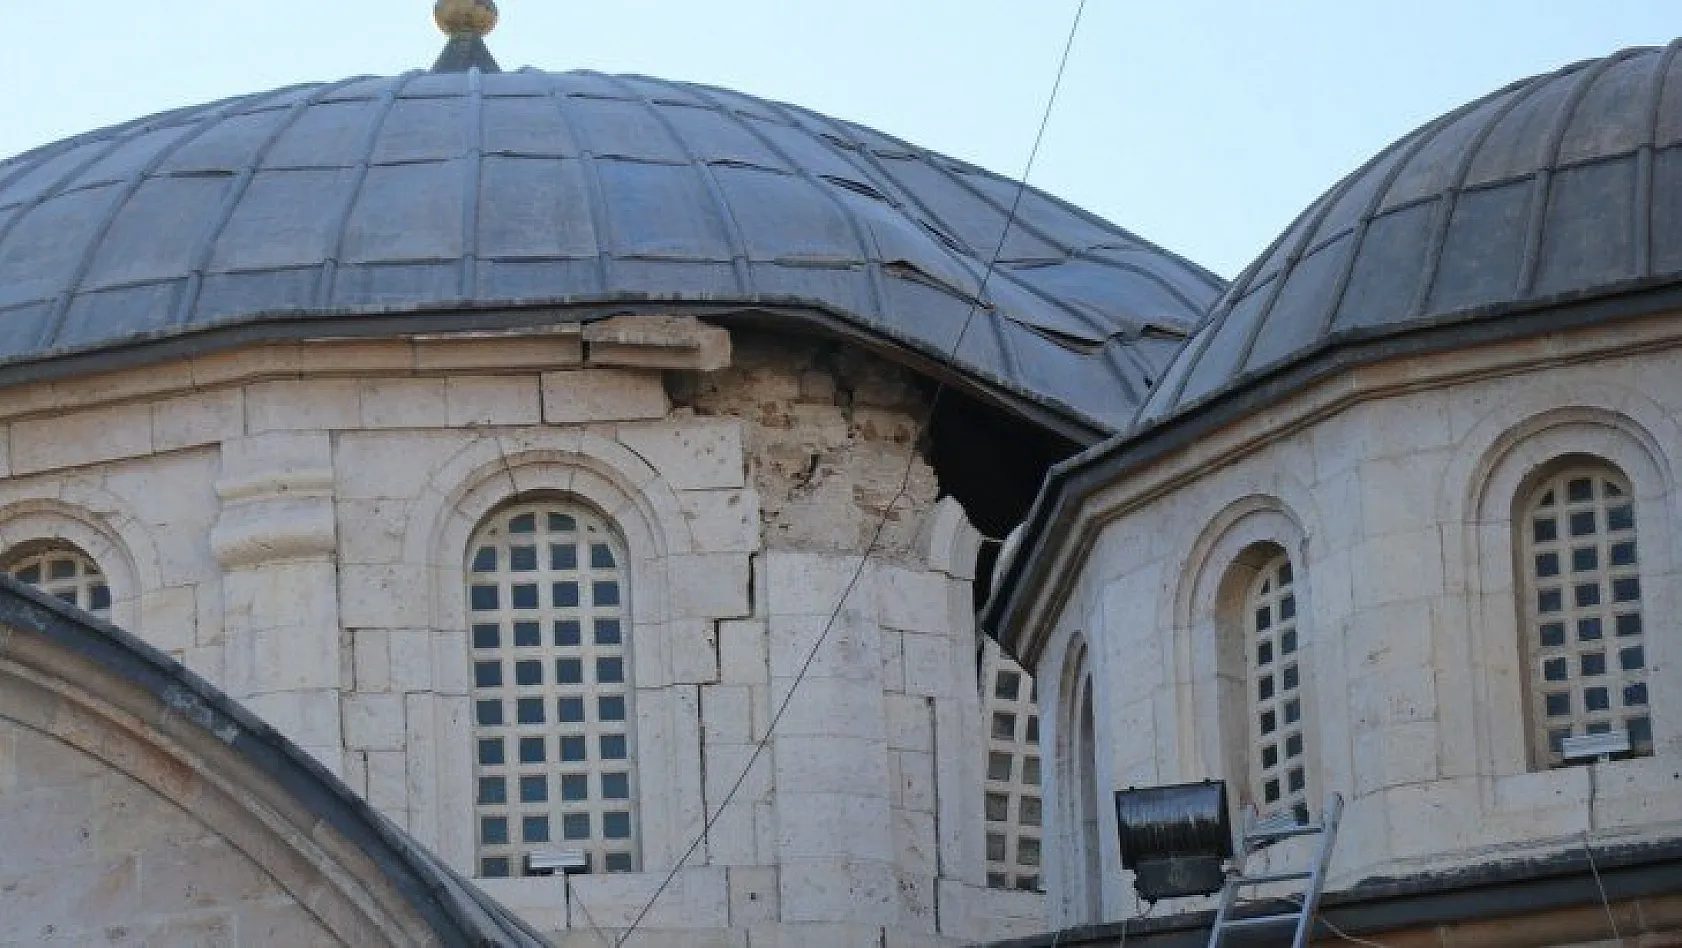 Yeni Caminin kubbesi çöktü Ulu Camide hasar oluştu